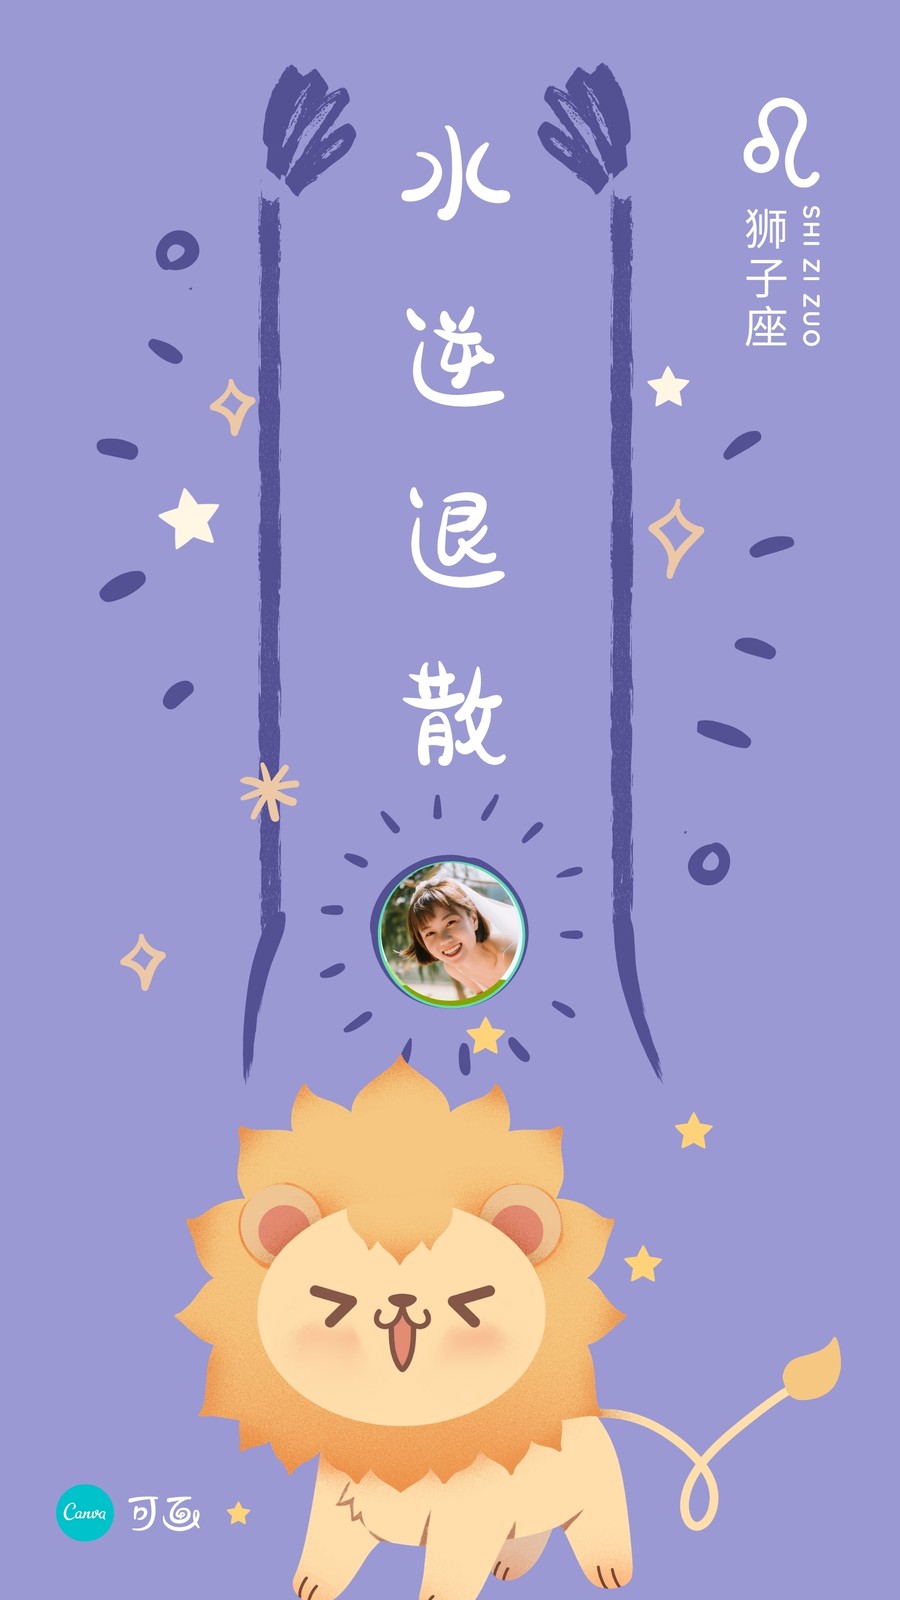 蓝紫色狮子座水逆退散十二星座可爱星座个人分享中文手机壁纸 模板 Canva可画